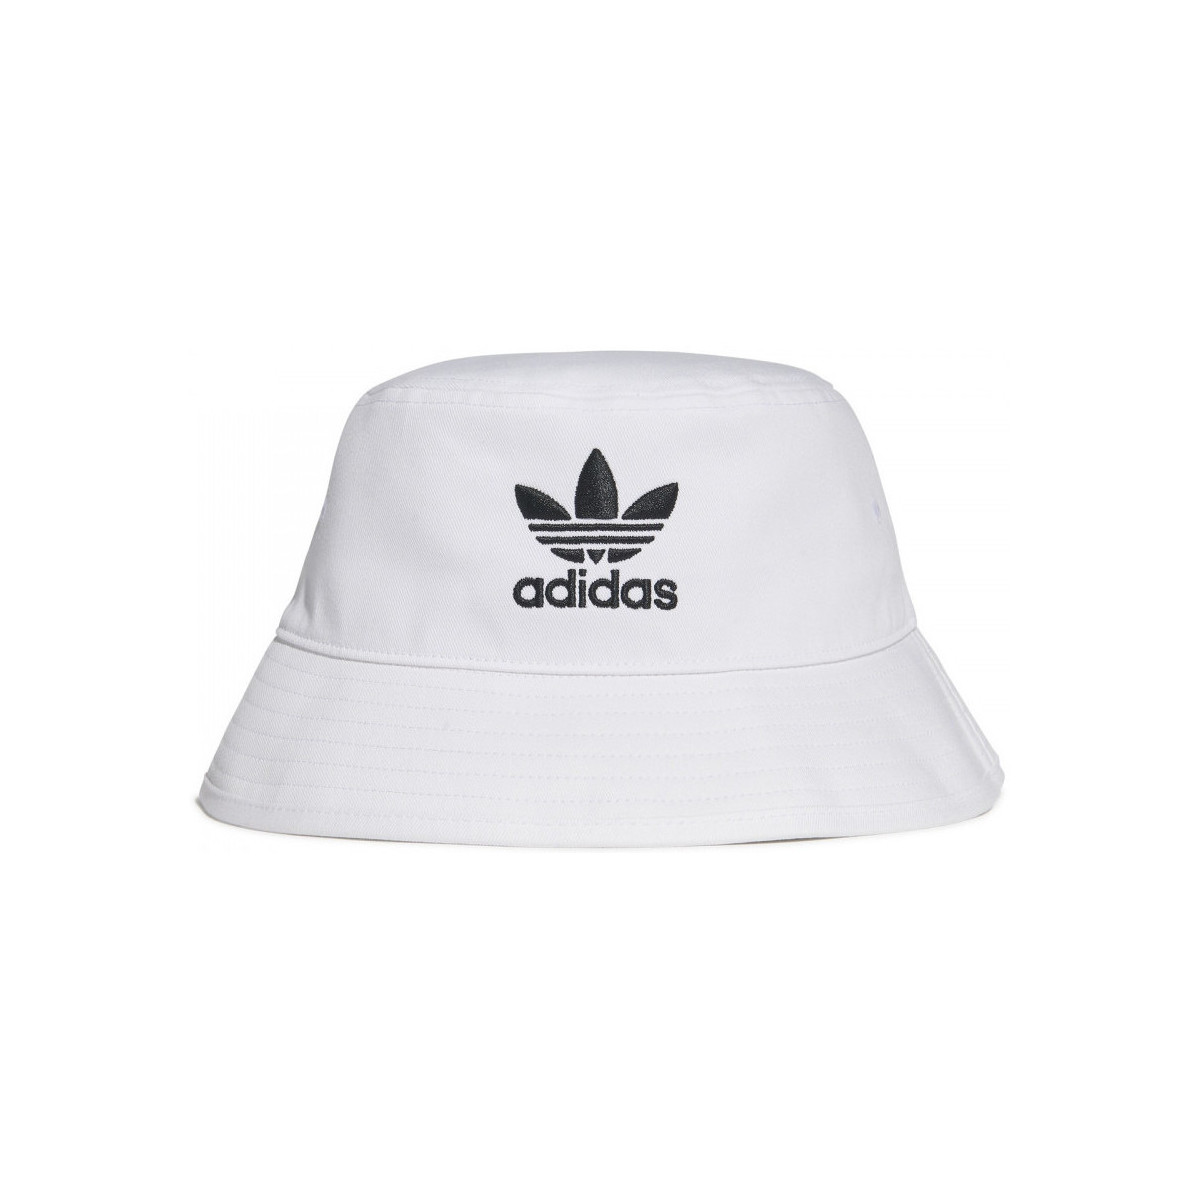 Dodatki Damskie Kapelusze adidas Originals Trefoil bucket hat adicolor Biały